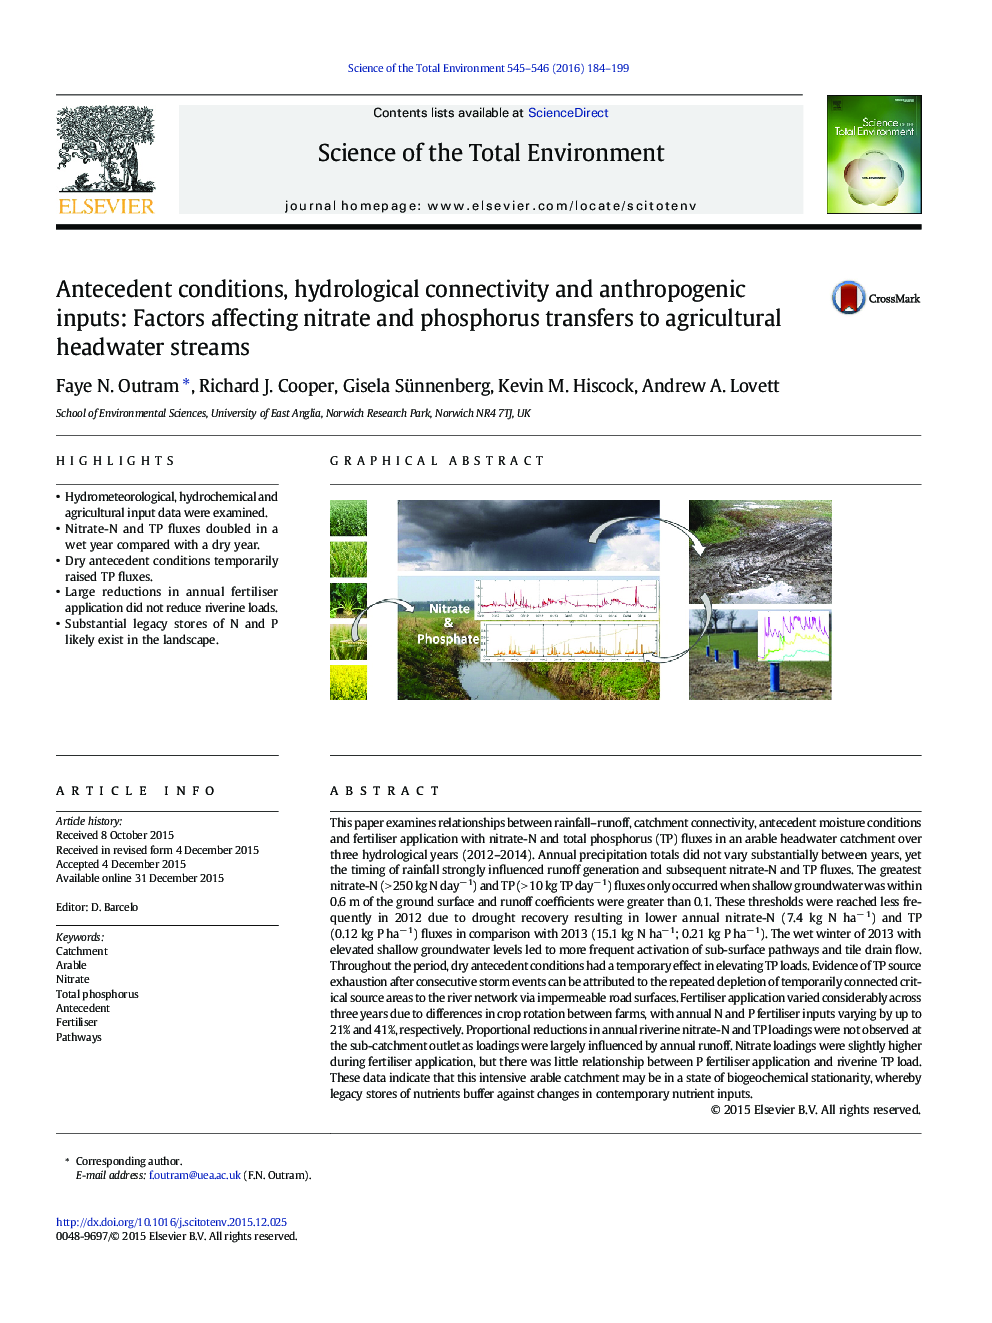 شرایط پیشین، اتصال هیدرولوژیکی و ورودی های انسان شناسی: عوامل موثر بر انتقال نیترات و فسفر به جریان های آبخیز کشاورزی 